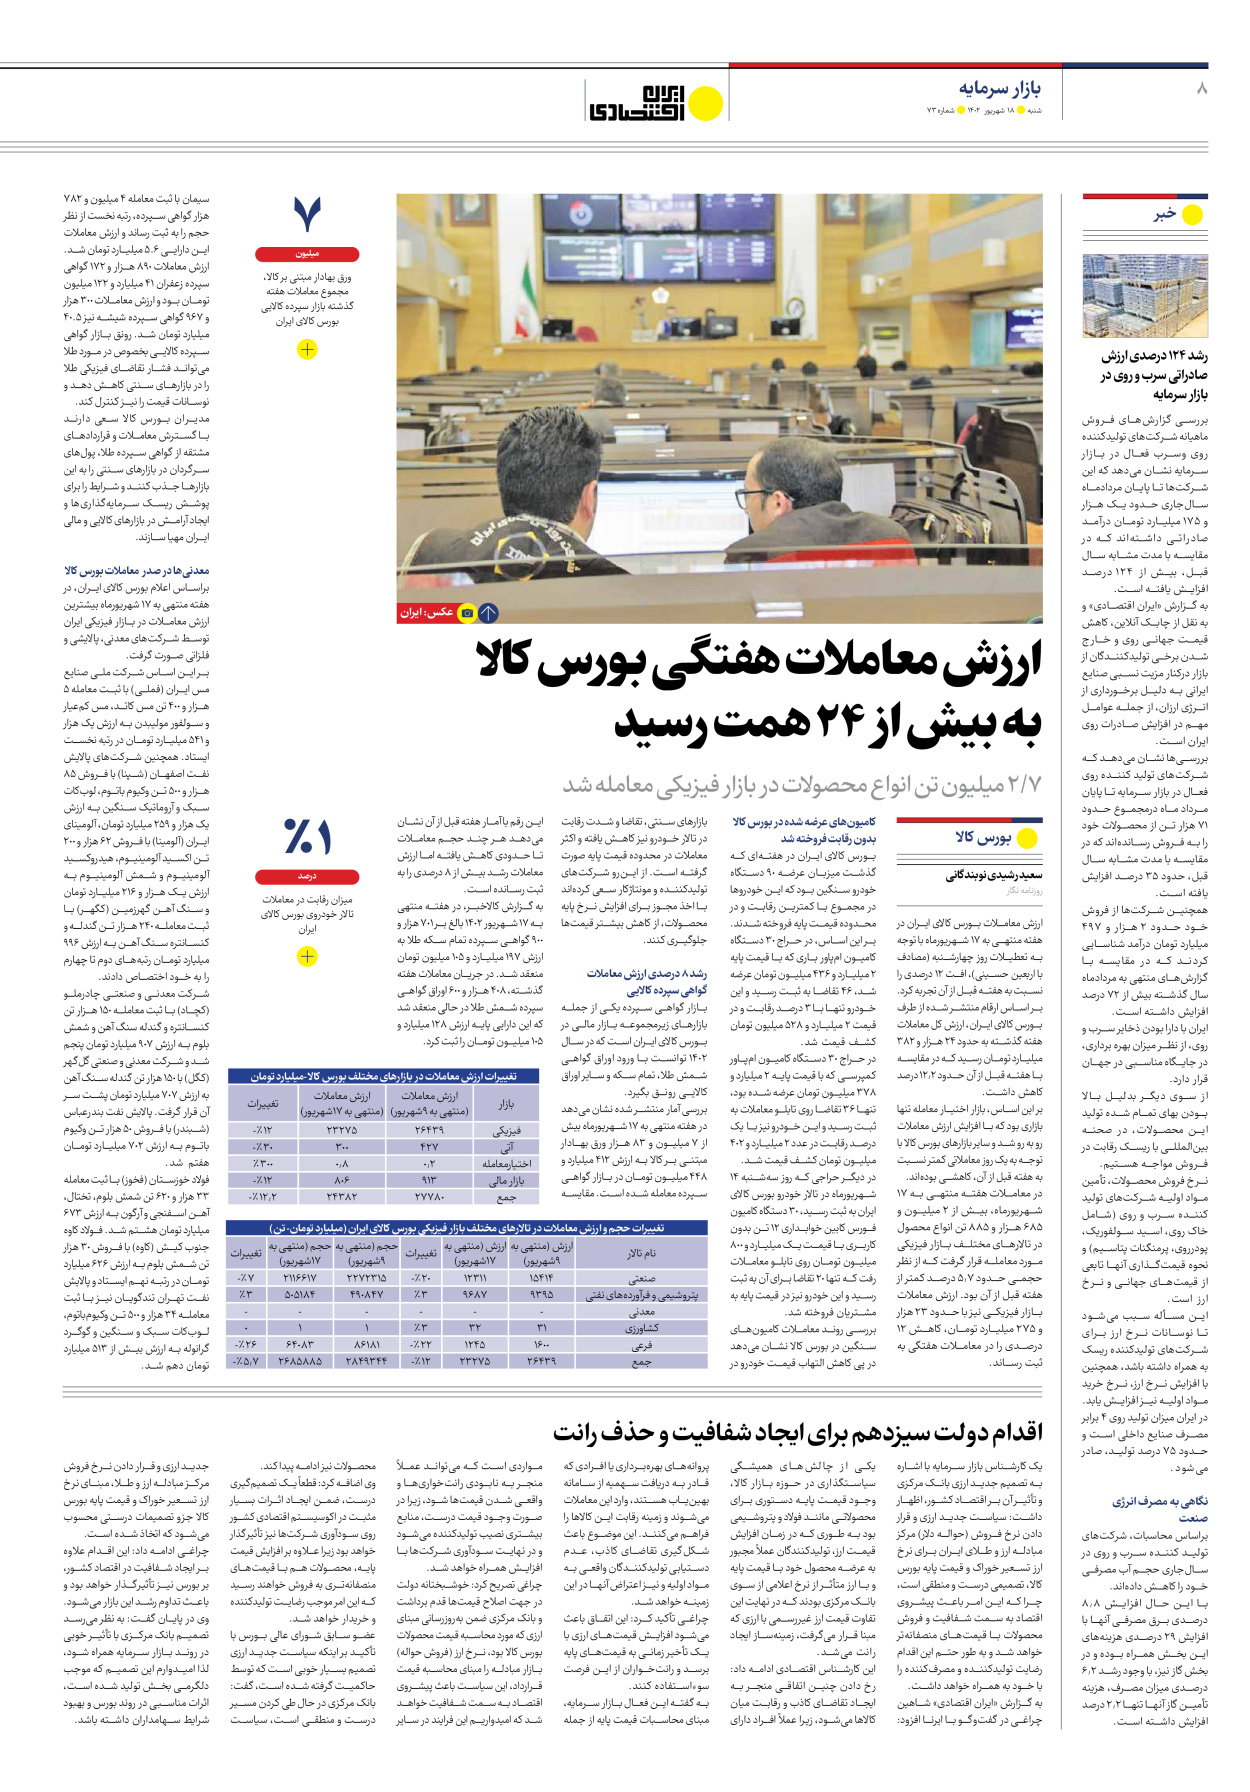 روزنامه ایران اقتصادی - شماره هفتاد و سه - ۱۸ شهریور ۱۴۰۲ - صفحه ۸